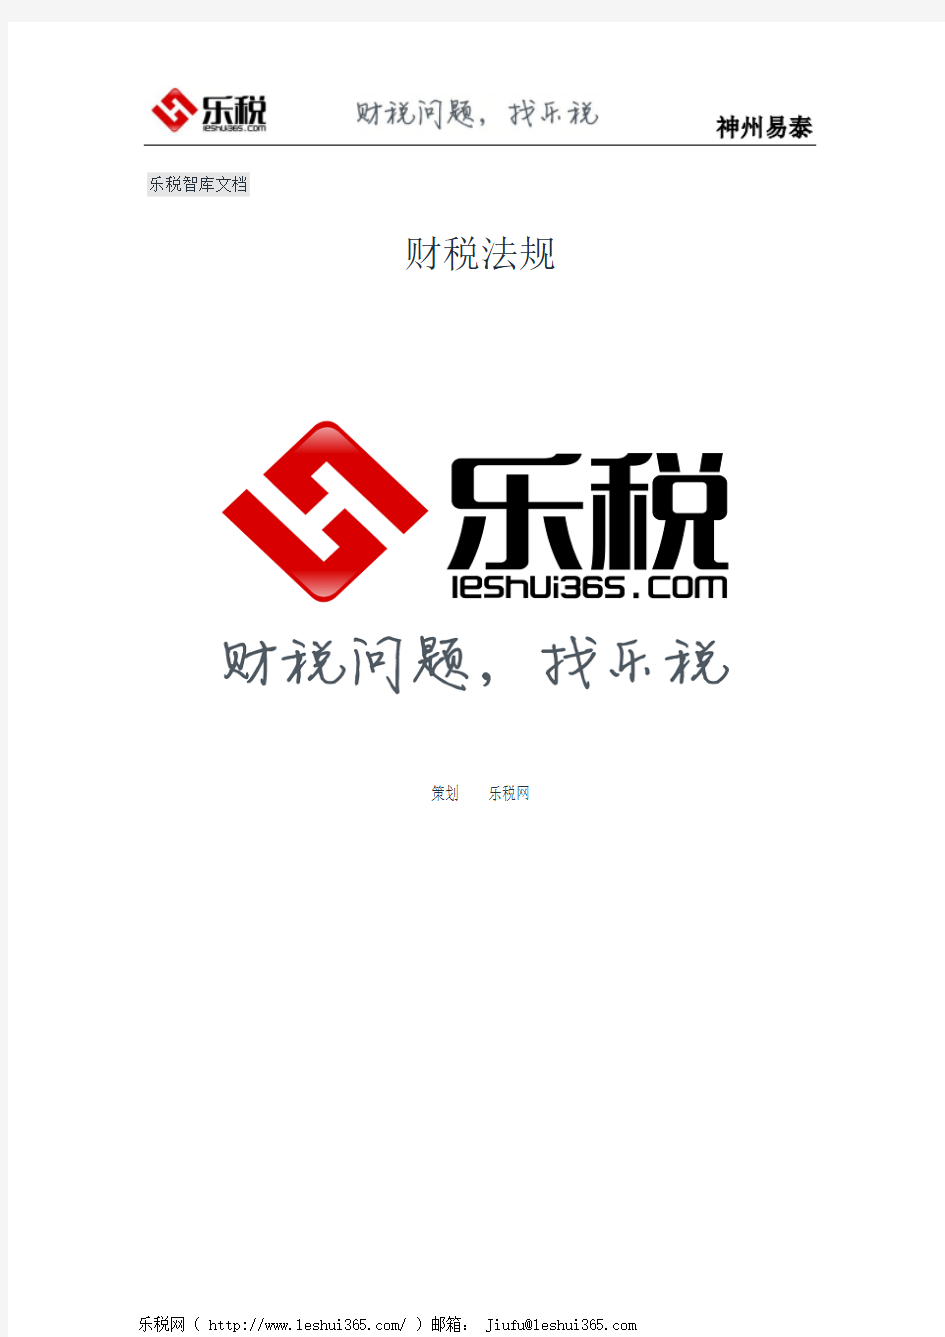 上海市国家税务局上海市地方税务局关于金税三期系统上线有关事项的公告